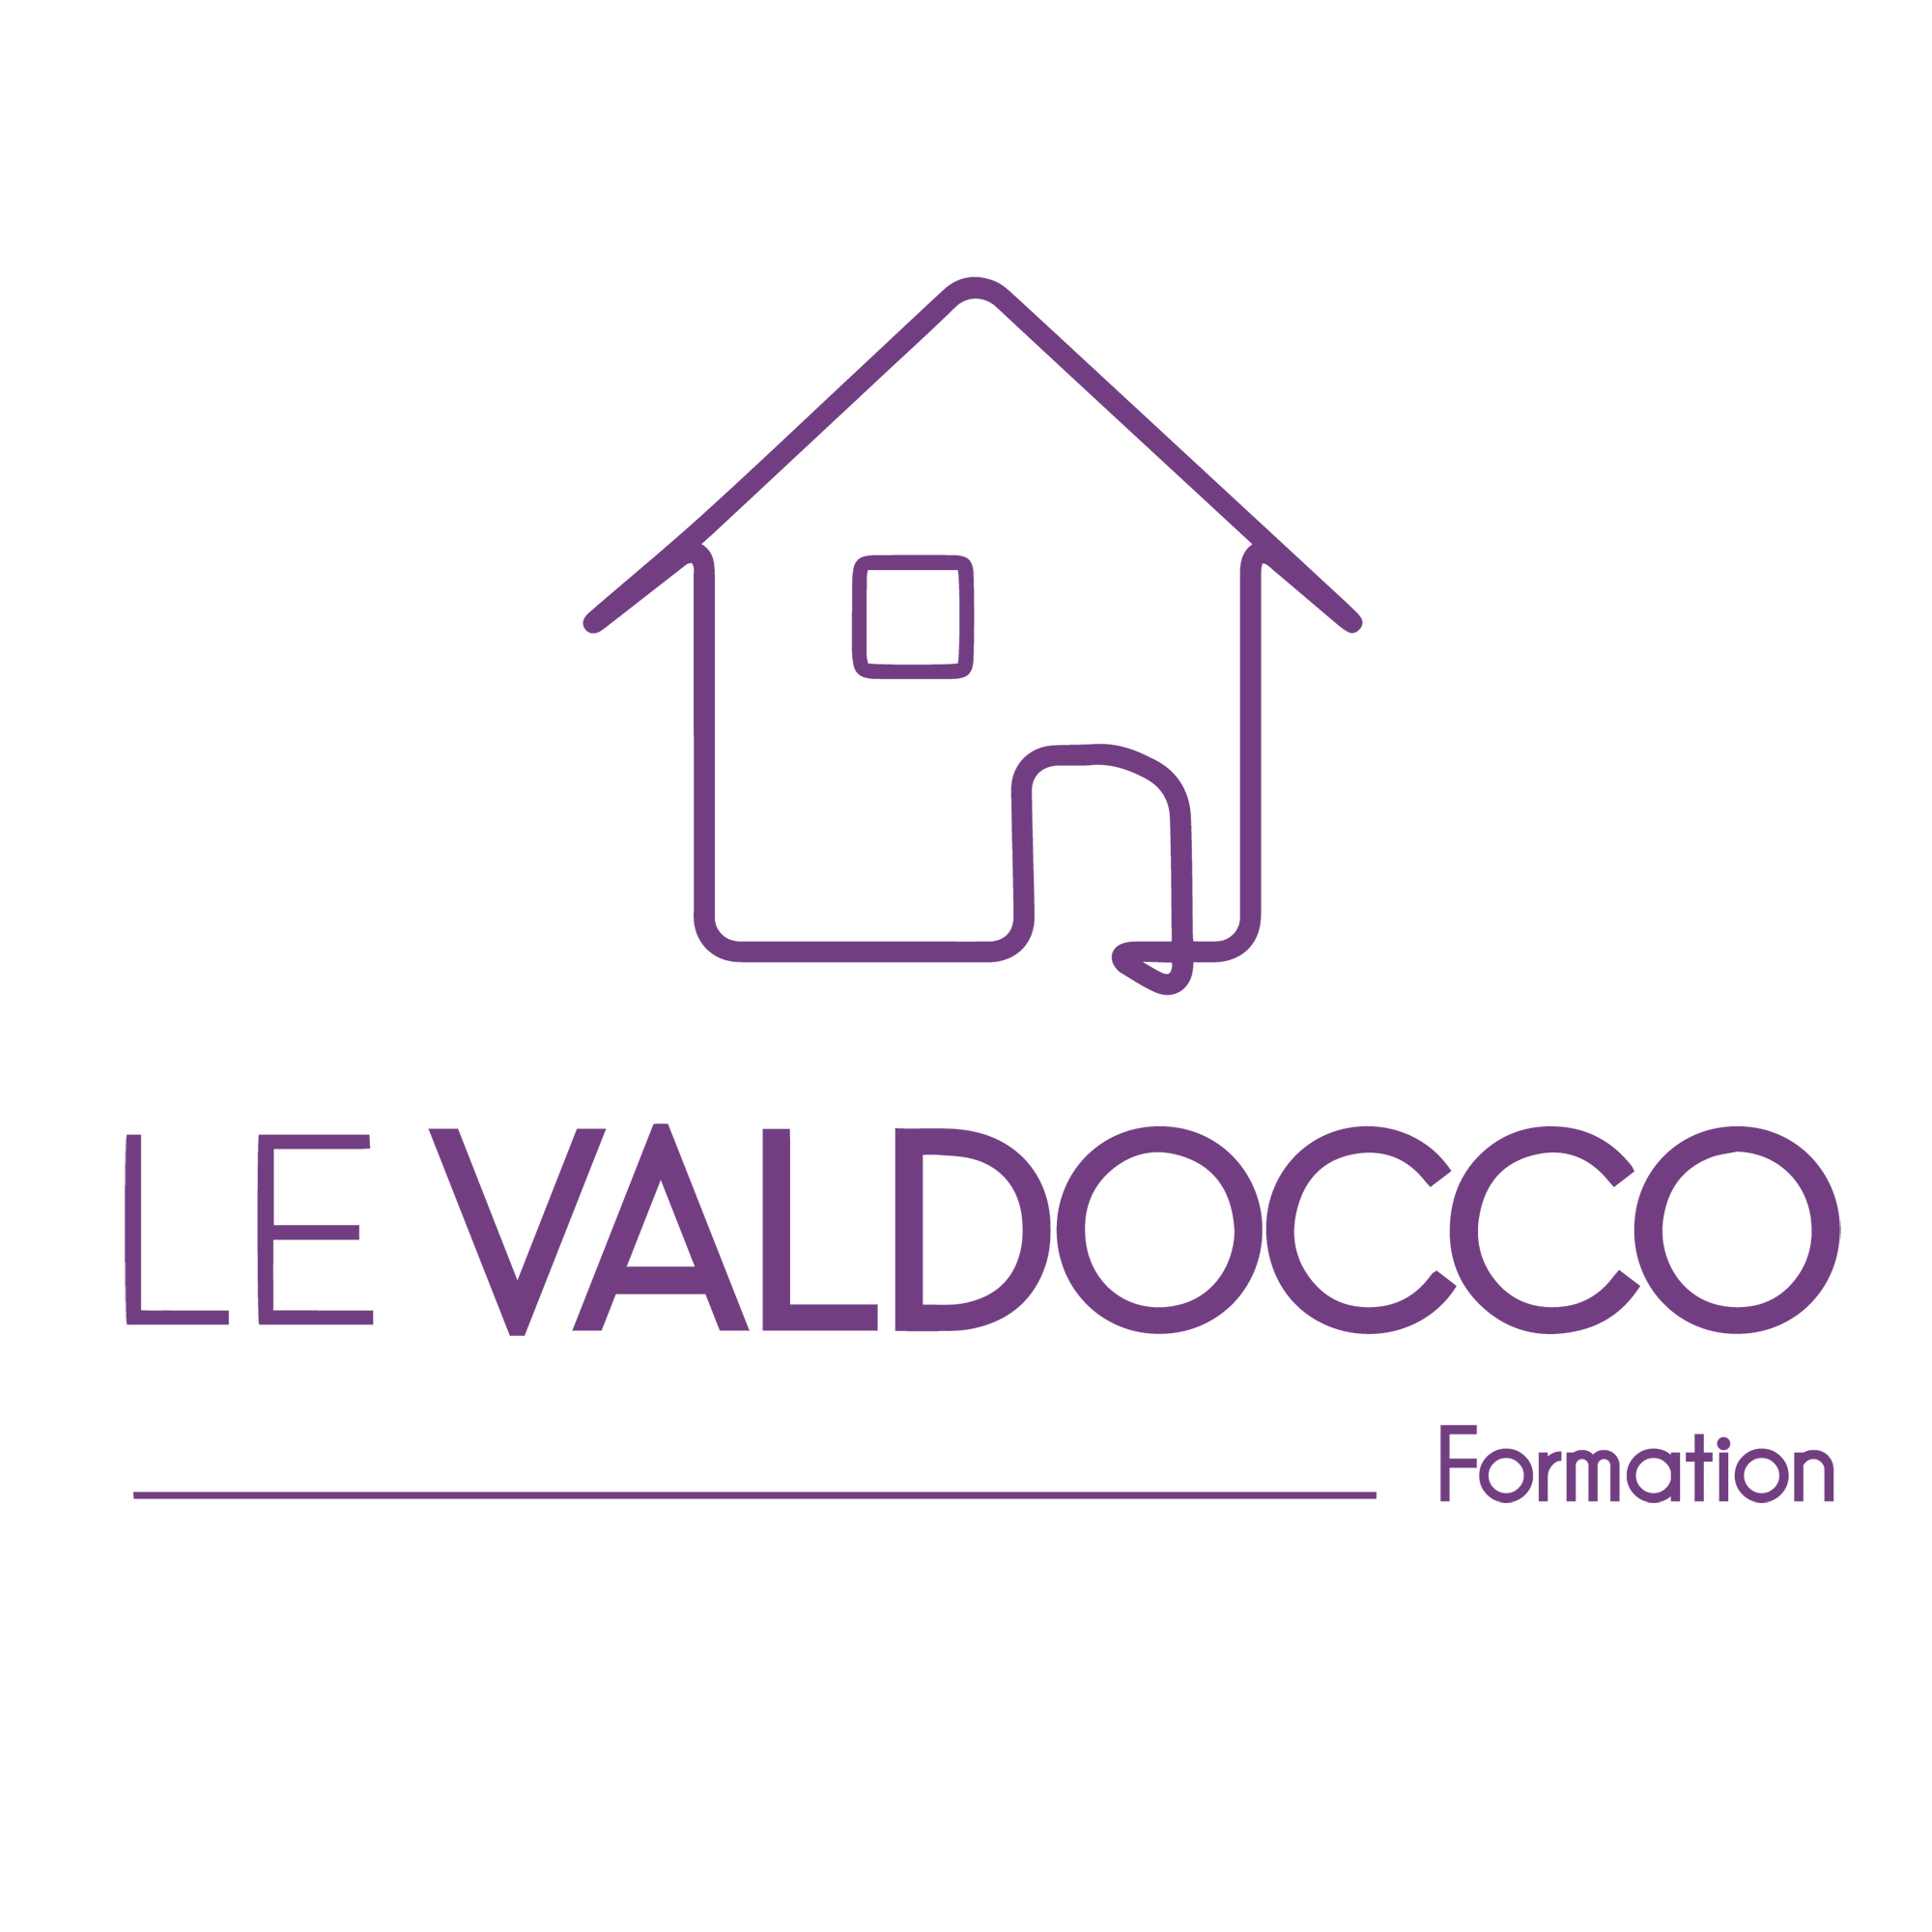 Le Valdocco Logo formation